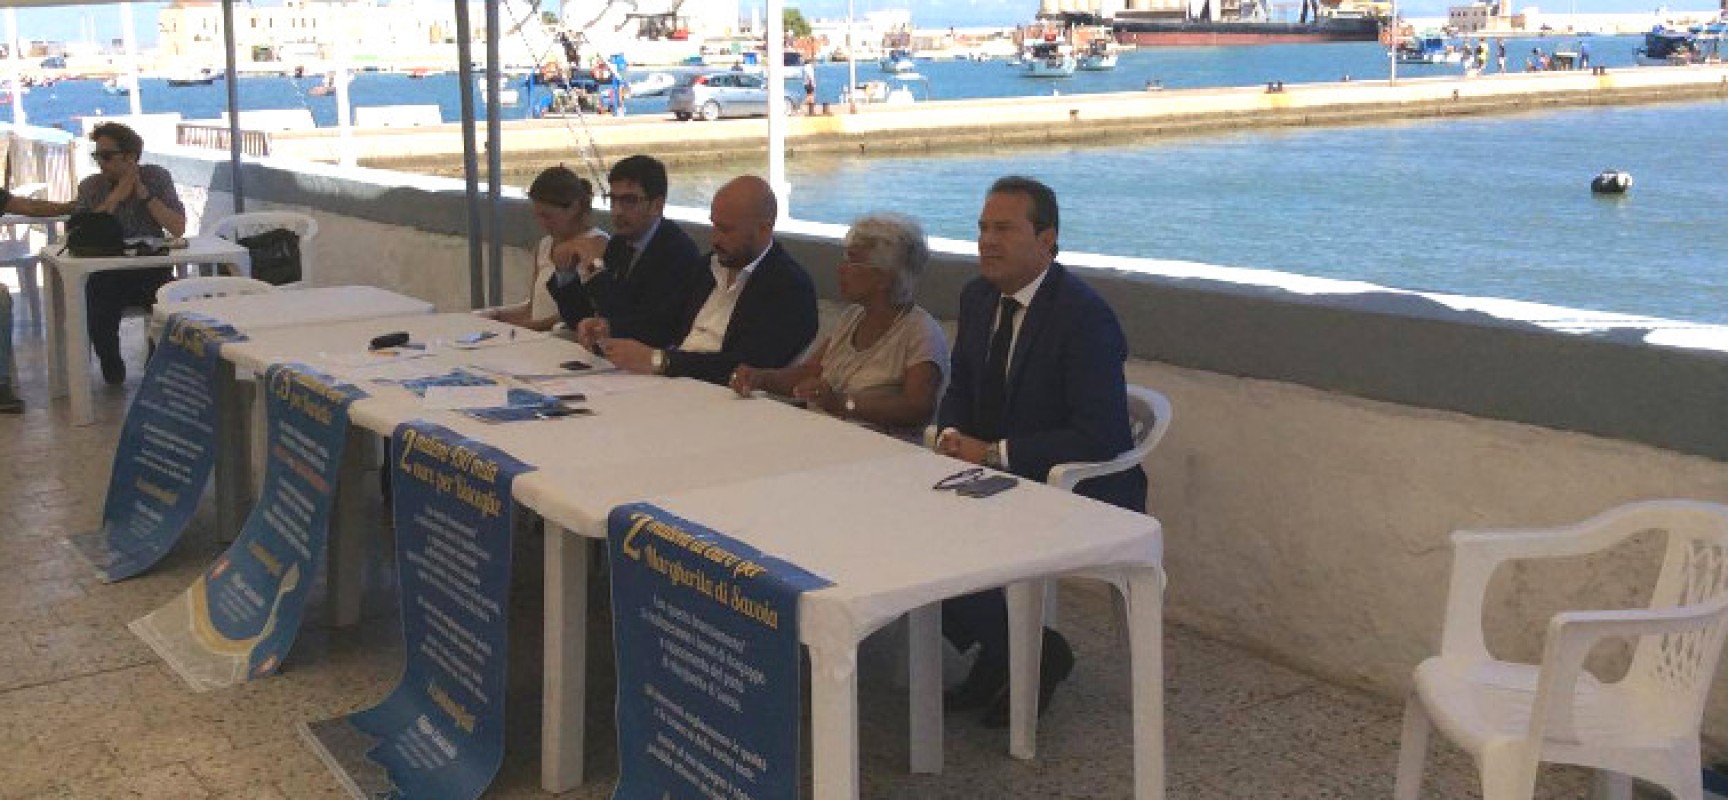 Piano coste, Spina: “Finanziamento di 2.5 milioni per ripascimento ciottoli e sviluppo litorale”